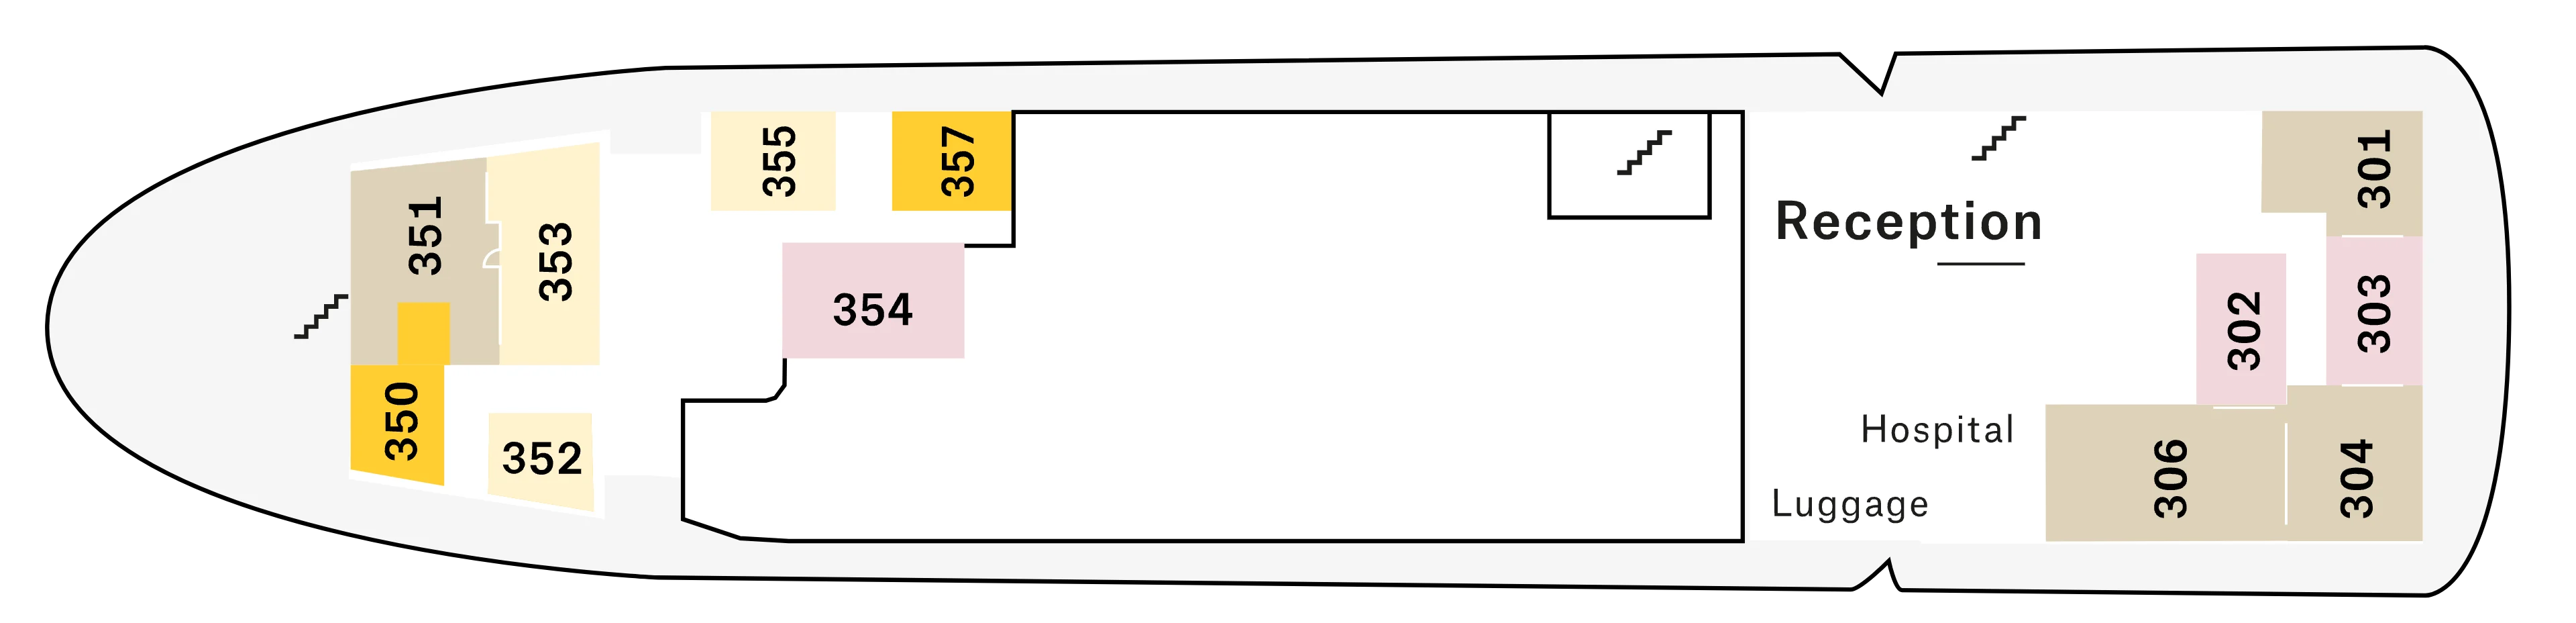 nordstjernen-deckplan_deck-c